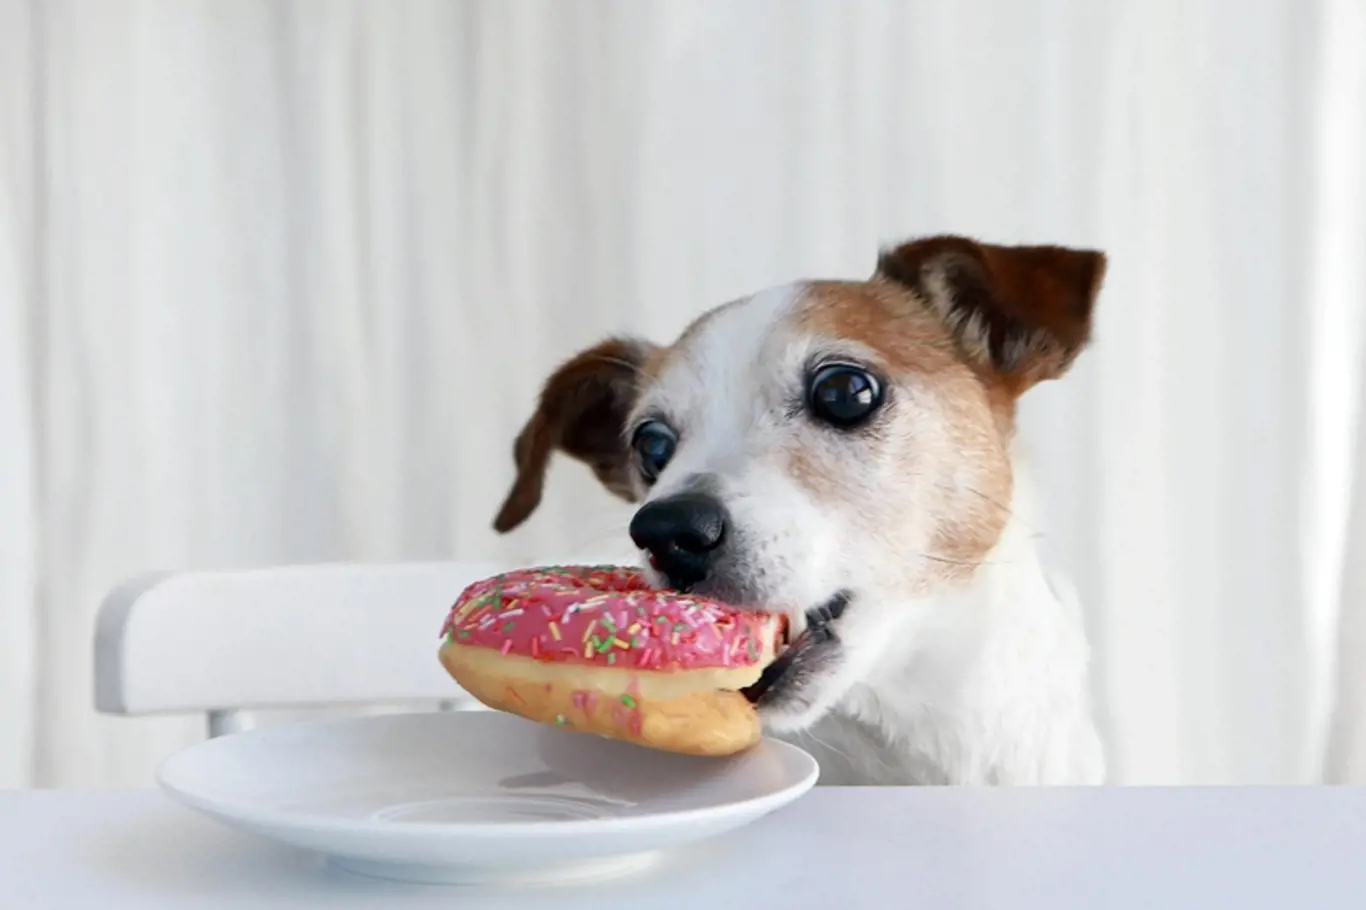 Víte, které potraviny jsou nebezpečné pro vašeho psího kamaráda?